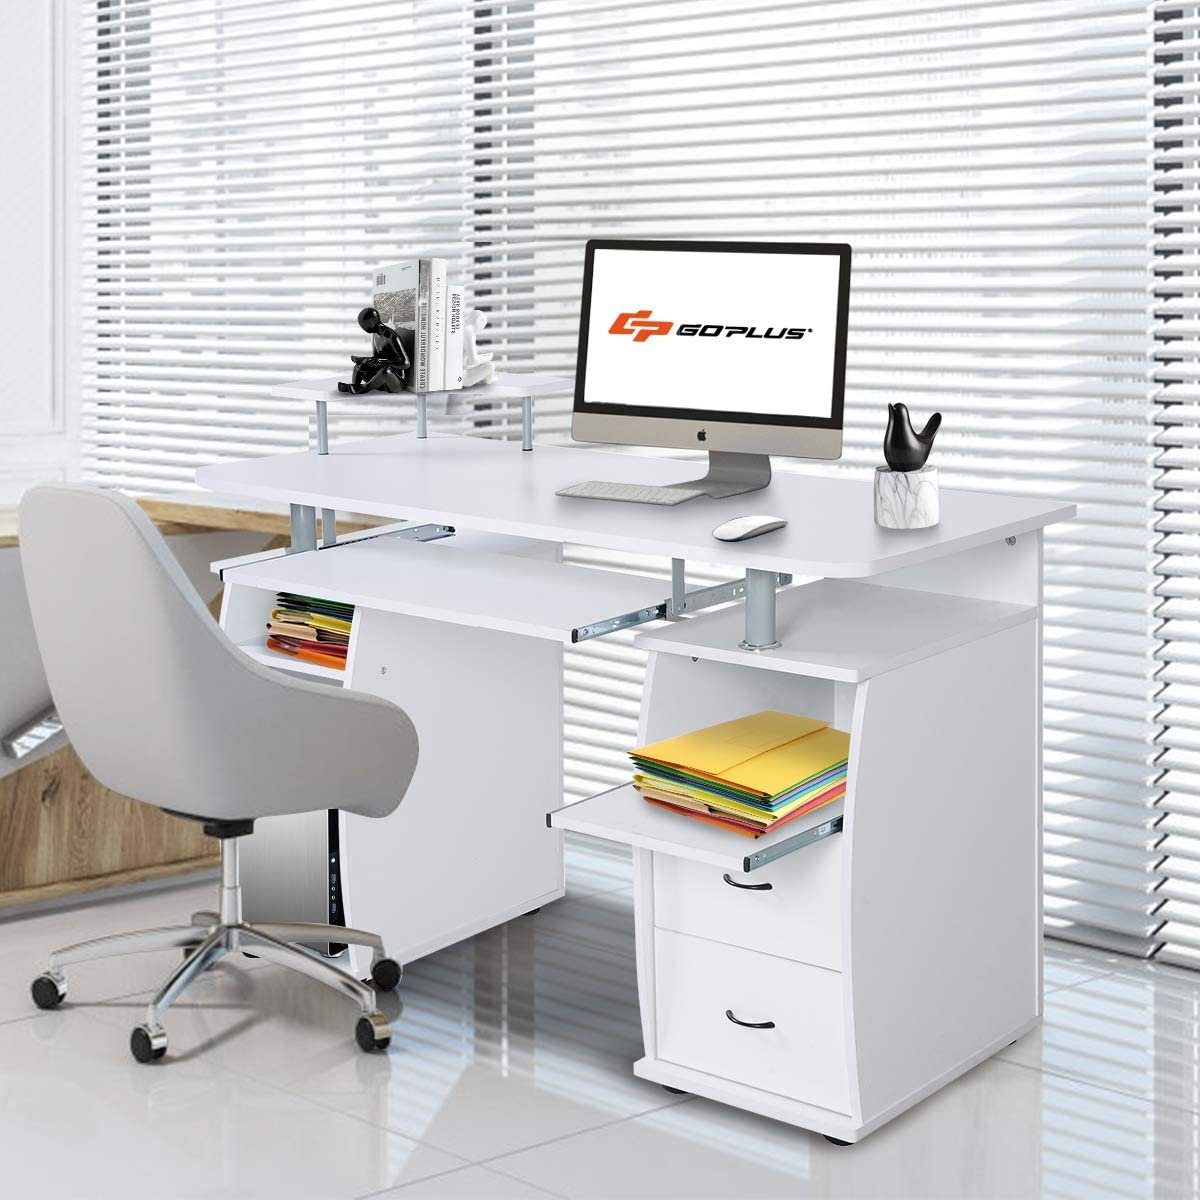 KOMFOTTEU Computertisch Schreibtisch, mit Weiß Tastaturauszug, 120x55x76cm